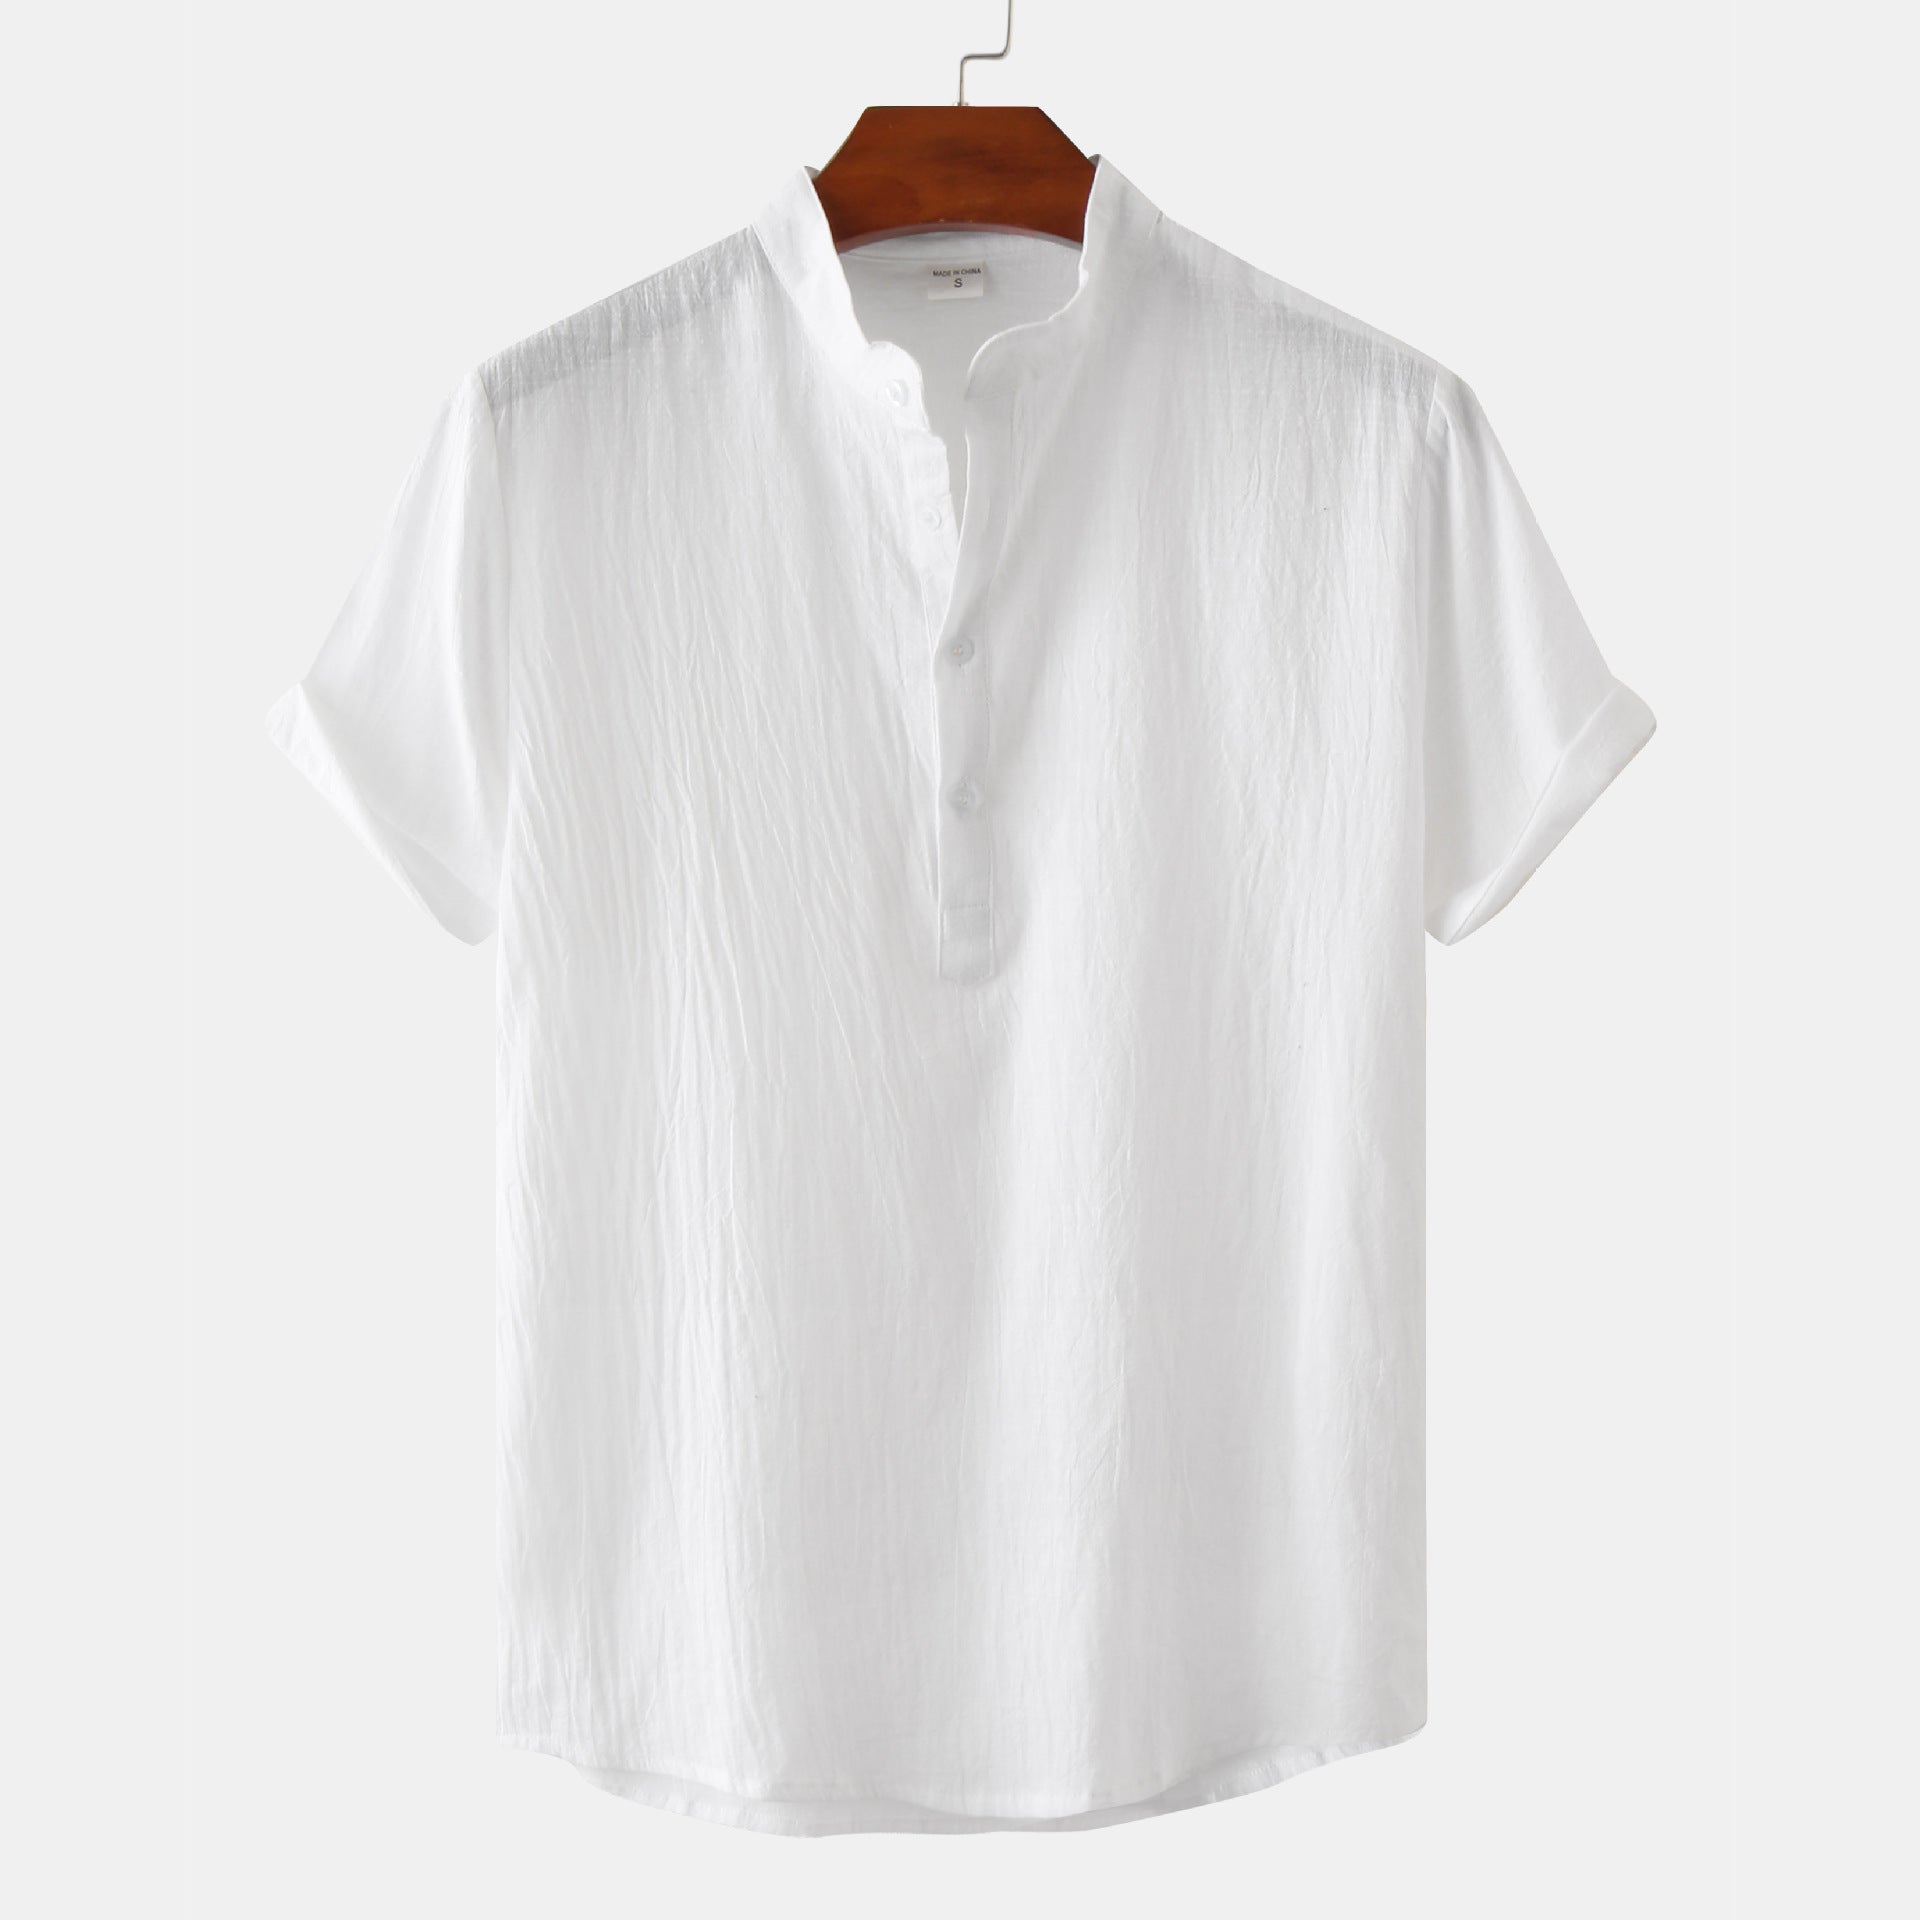 Casual Solid Color Shirt Short Sleeve Shirt Beach T-Shirt Men Tops Summer